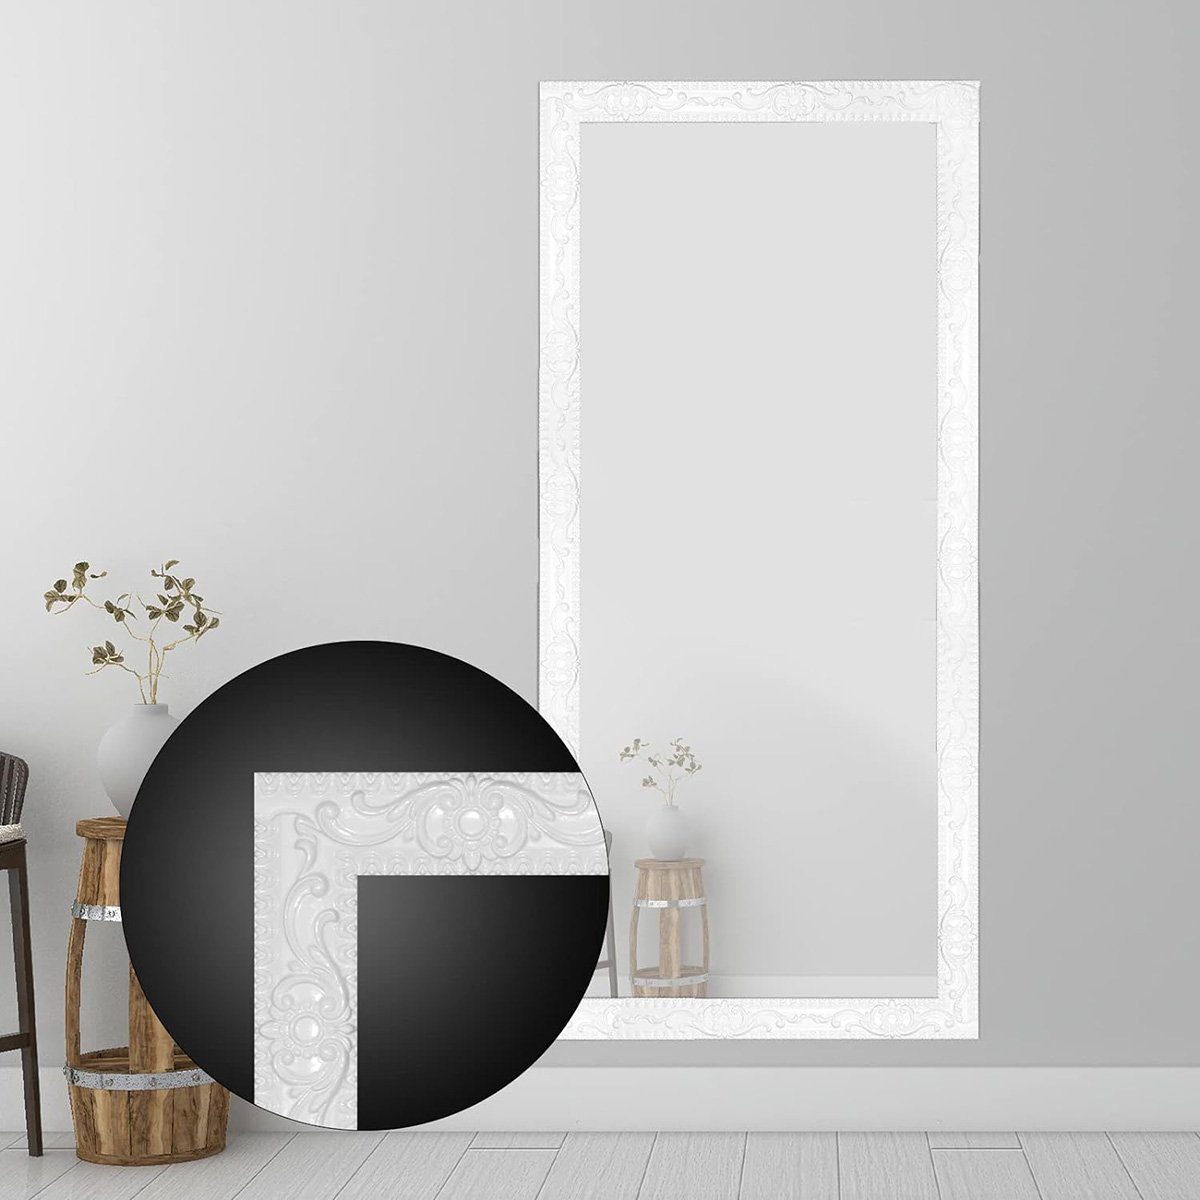 götäzer in: & flexible 16,4 1,4 Abziehen, – Decken x aufkleben Sockelleiste Einfassung ft. Wanddekorationen, für Weiss Selbstklebende Spiegelrahmen.